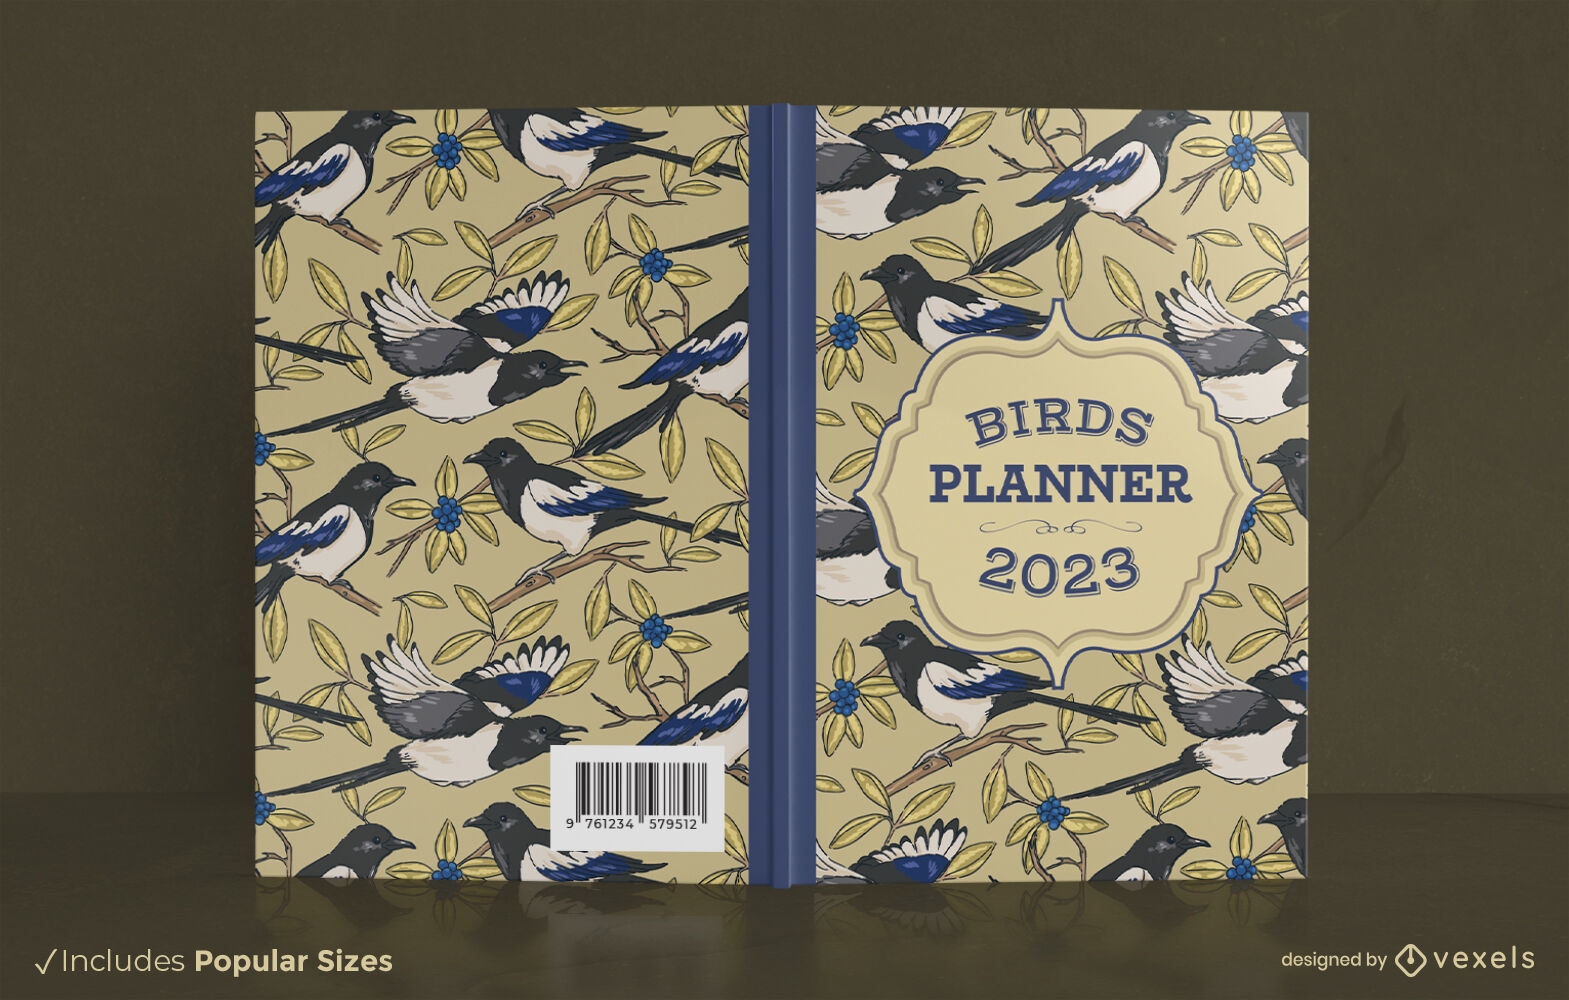 Magpipe birds book cover design KDP